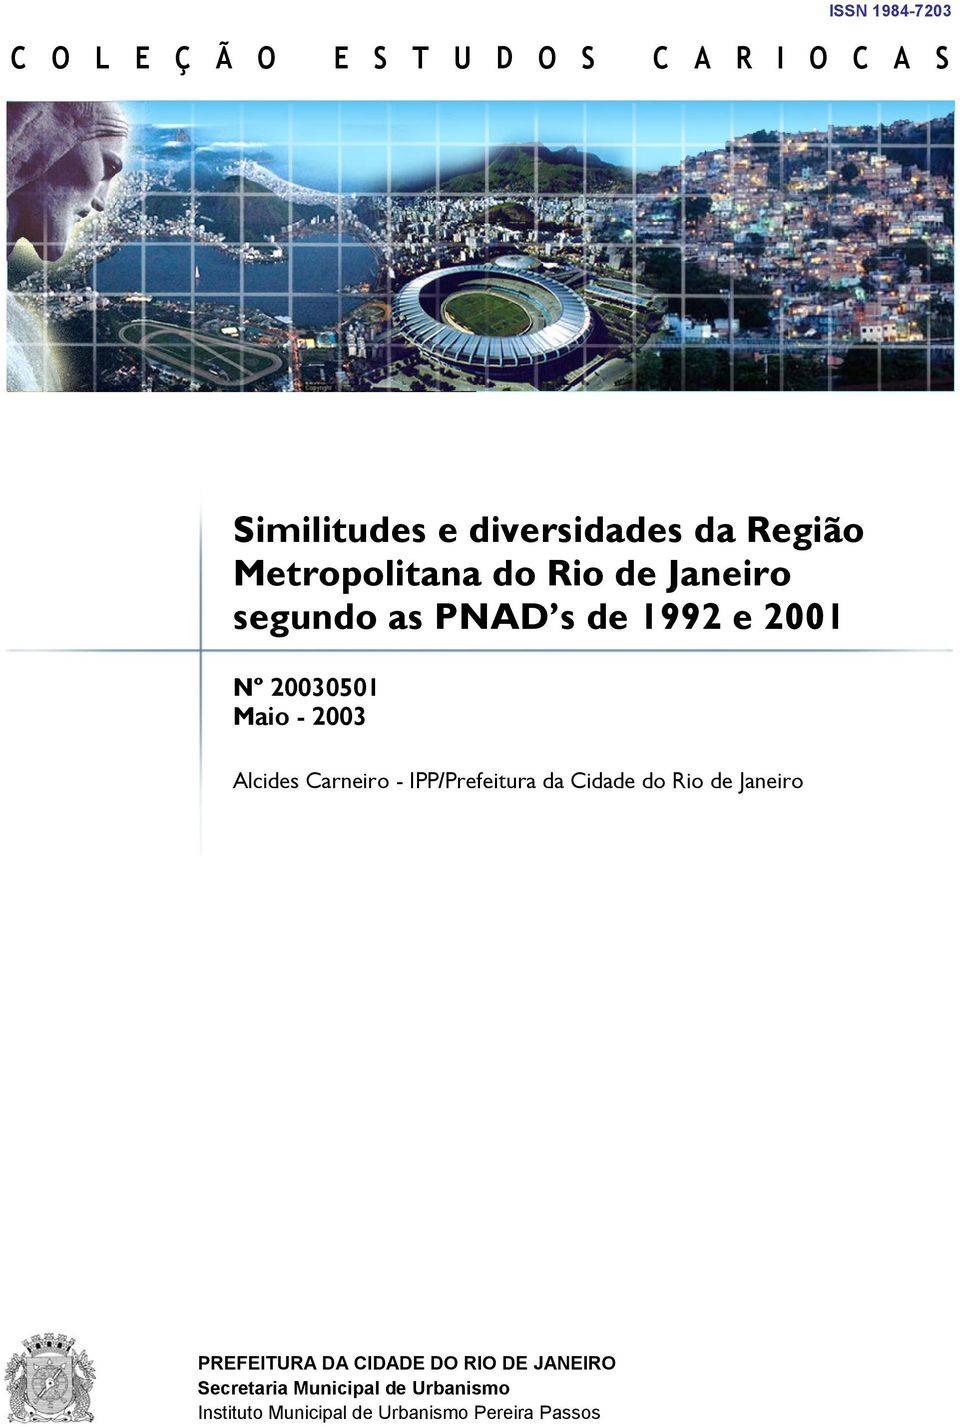 2003 Alcides Carneiro - IPP/Prefeitura da Cidade do Rio de Janeiro PREFEITURA DA CIDADE DO